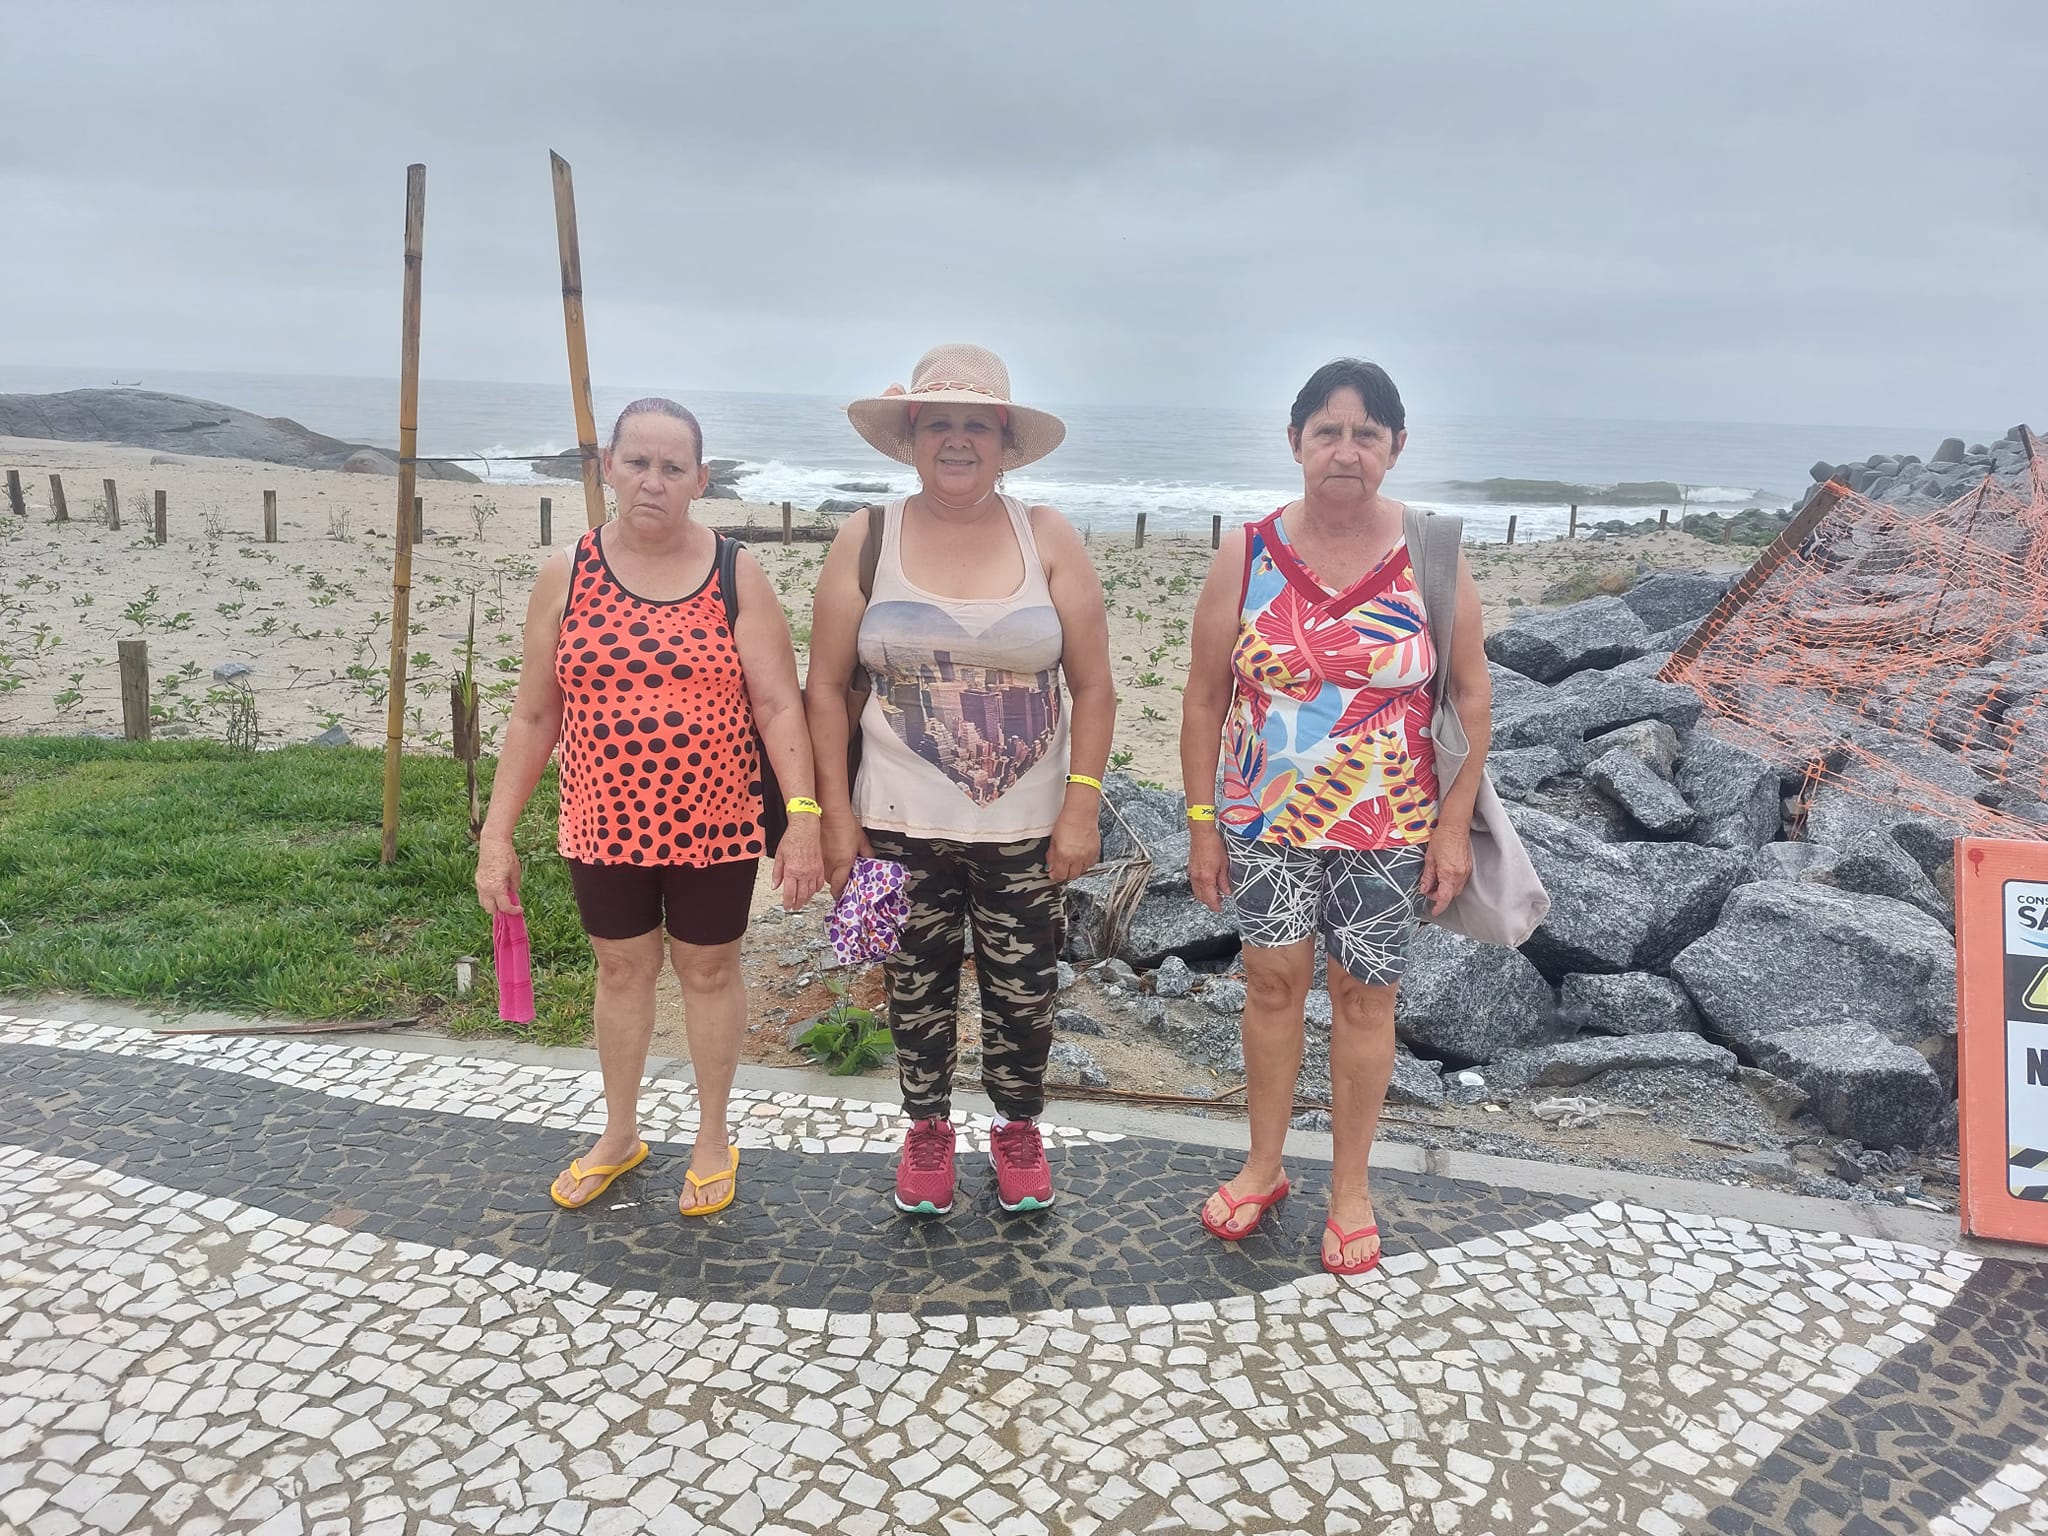 Acompanhe através dos registros fotográficos alguns momentos da viagem do grupo de idosos à praia de Matinhos